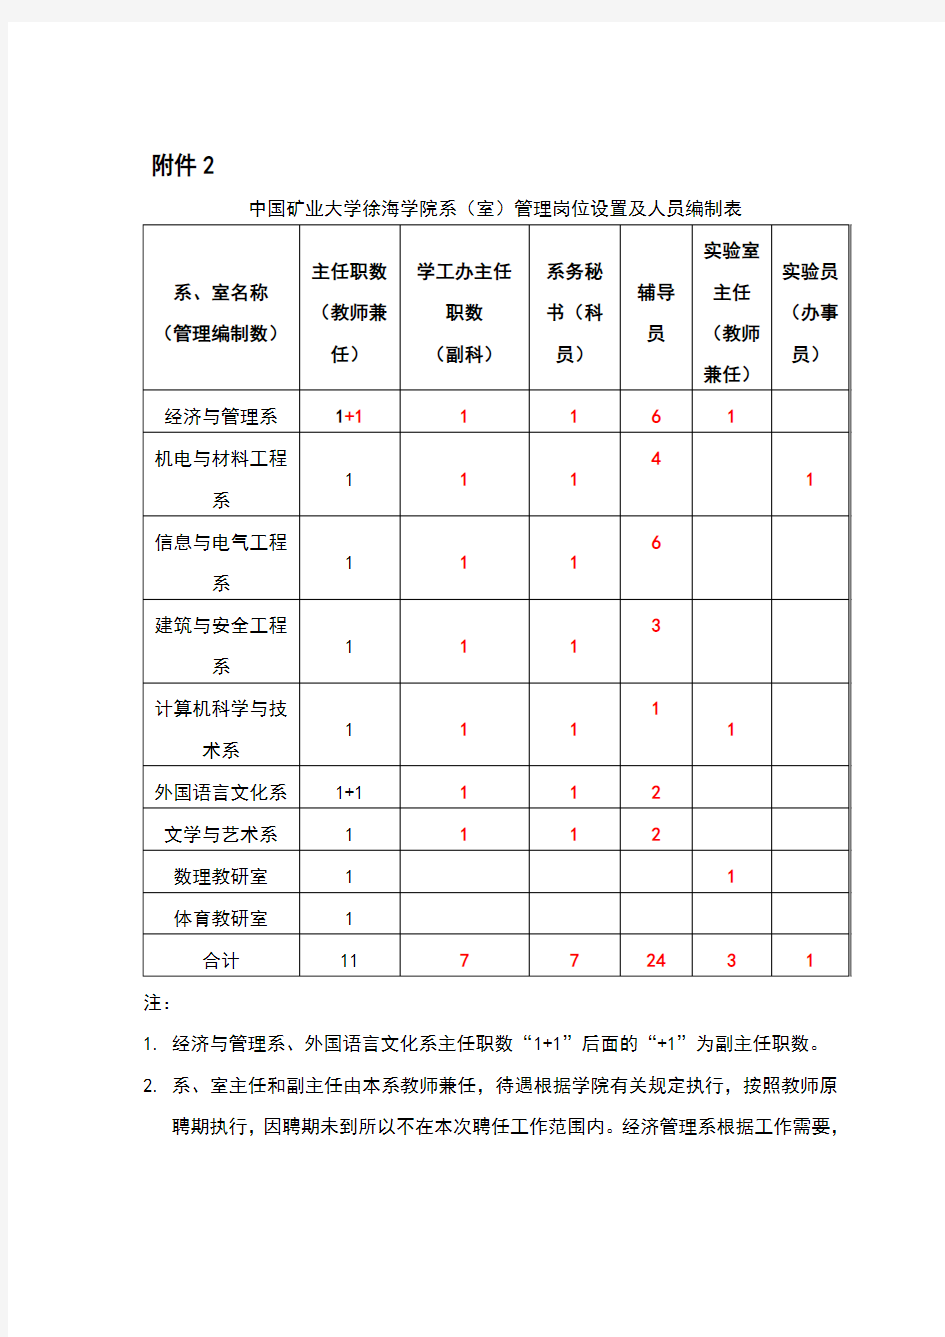 中国矿业大学徐海学院系(室)管理岗位设置及人员编制表